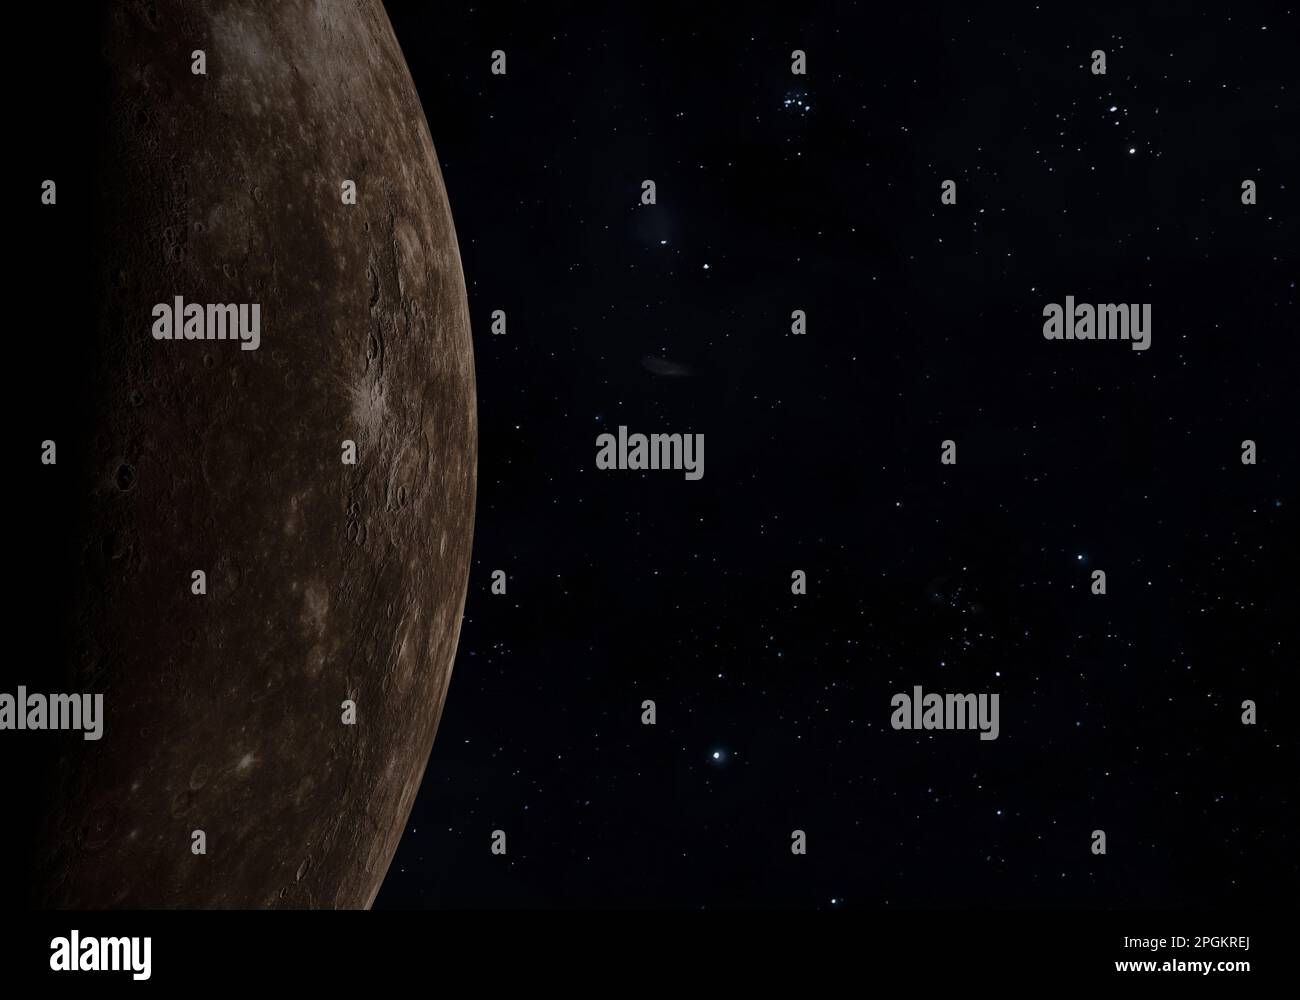 L'espace, la nébuleuse et la planète Mercure. Exploration spatiale. Banque D'Images